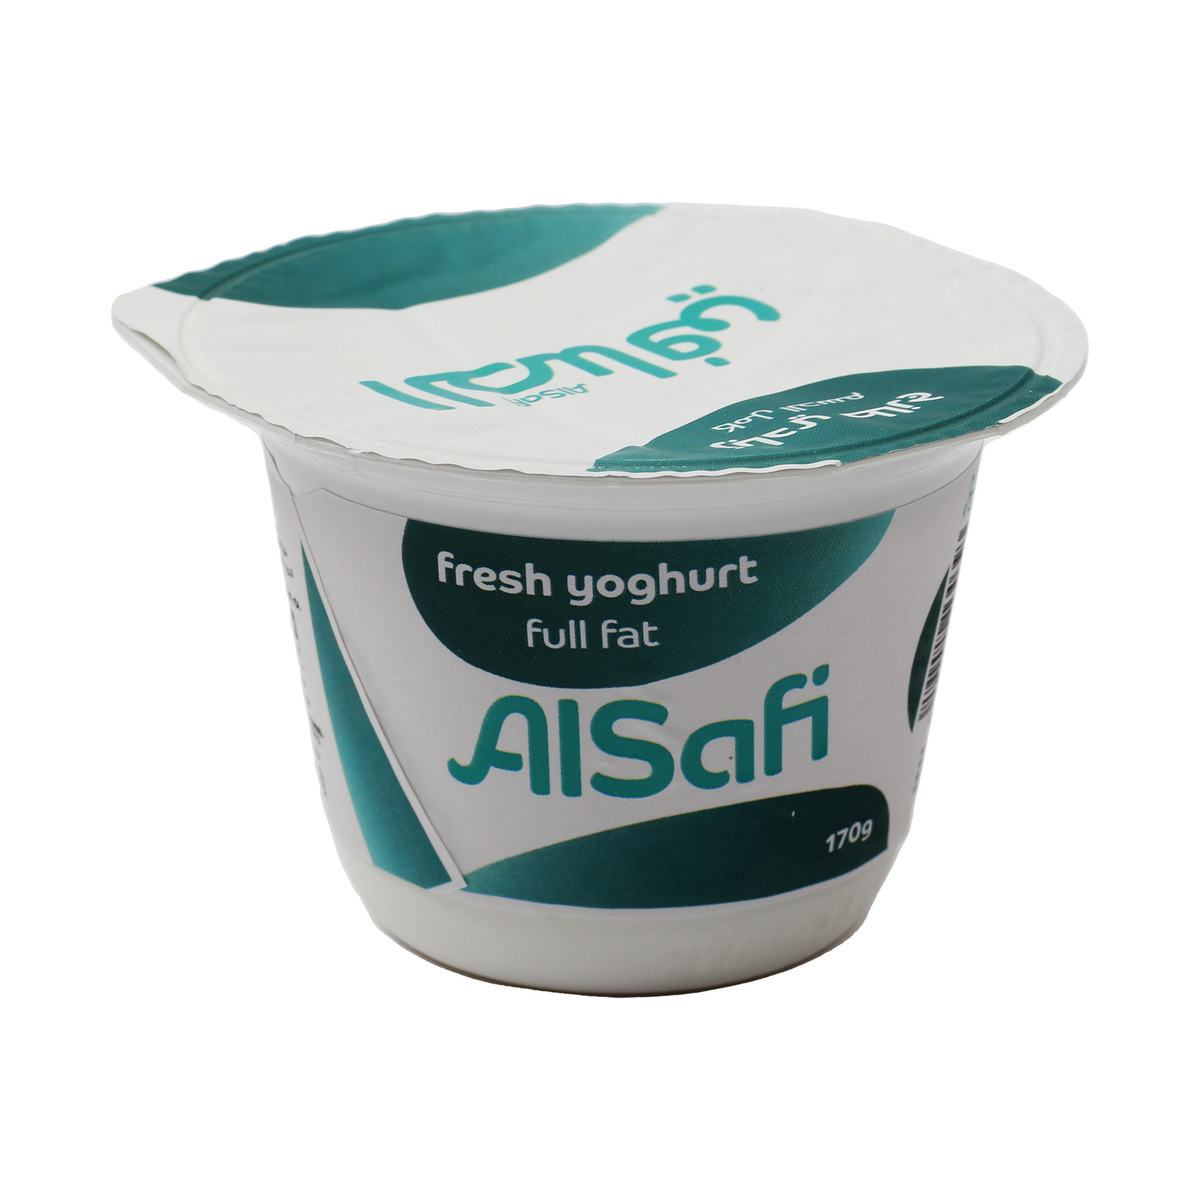 Al Safi Yoghurt F/F 170g 5+1